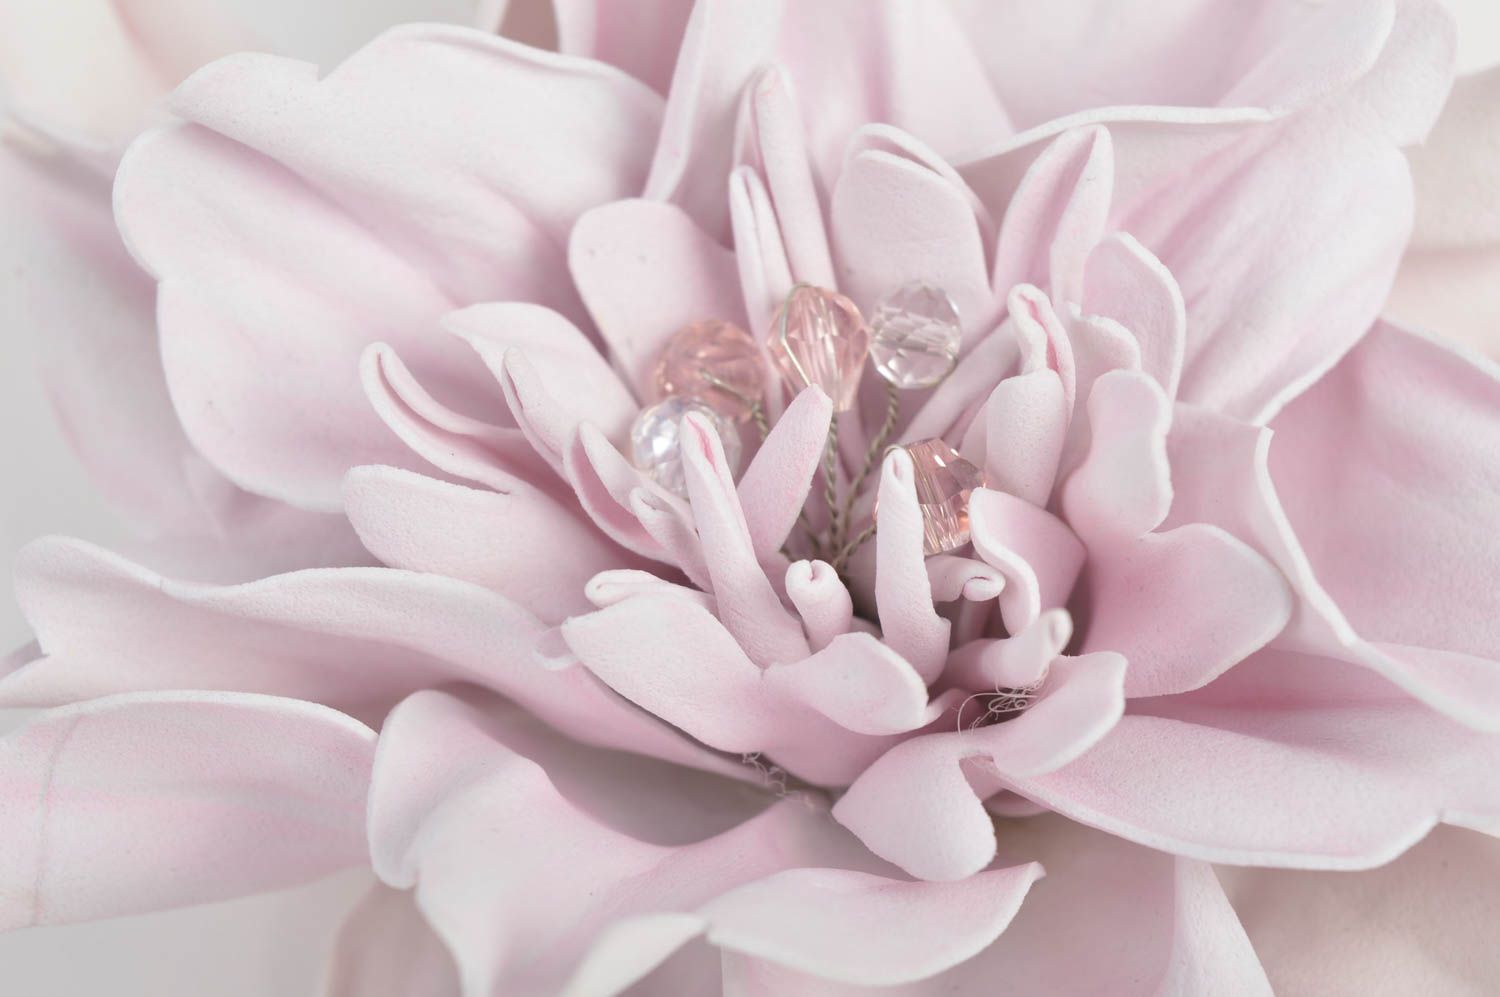 Красивая заготовка под брошь в виде цветка из фоамирана бледно розовая хенд мейд фото 5